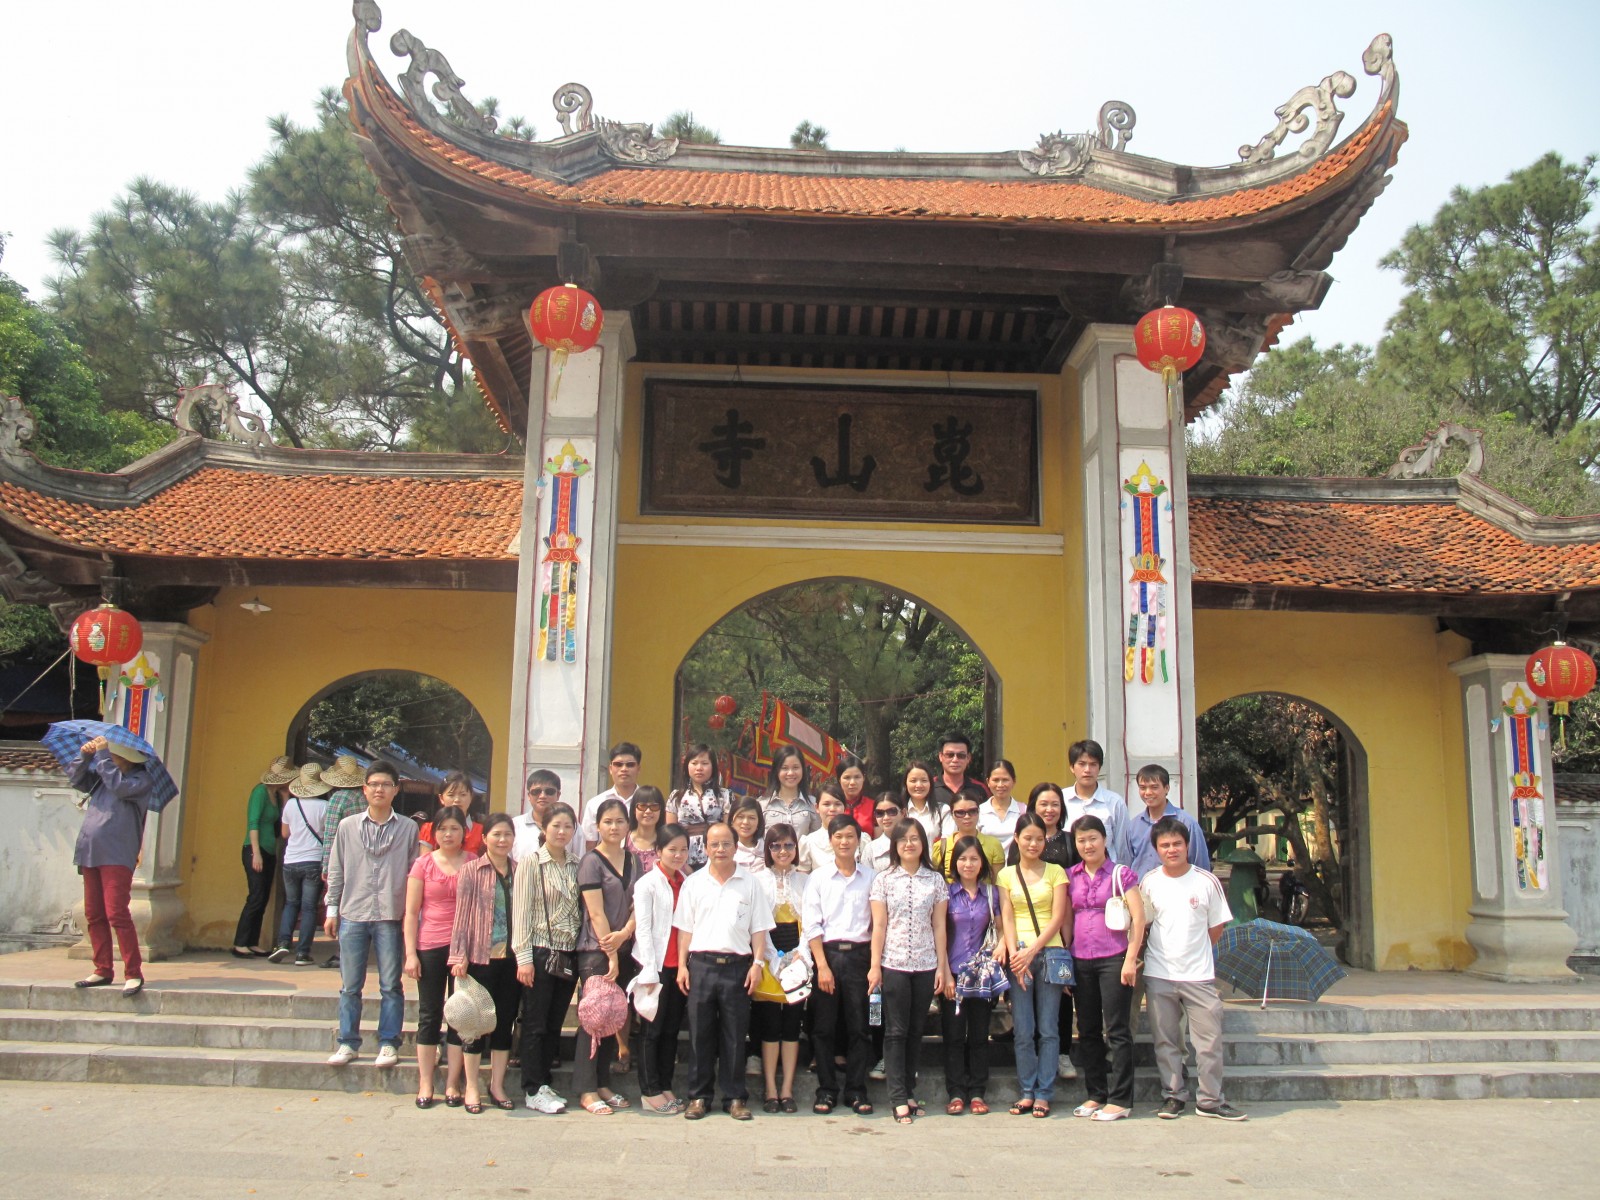 Du khách chụp ảnh lưu niệm tại chùa Côn Sơn, thị xã Chí Linh, Hải Dương